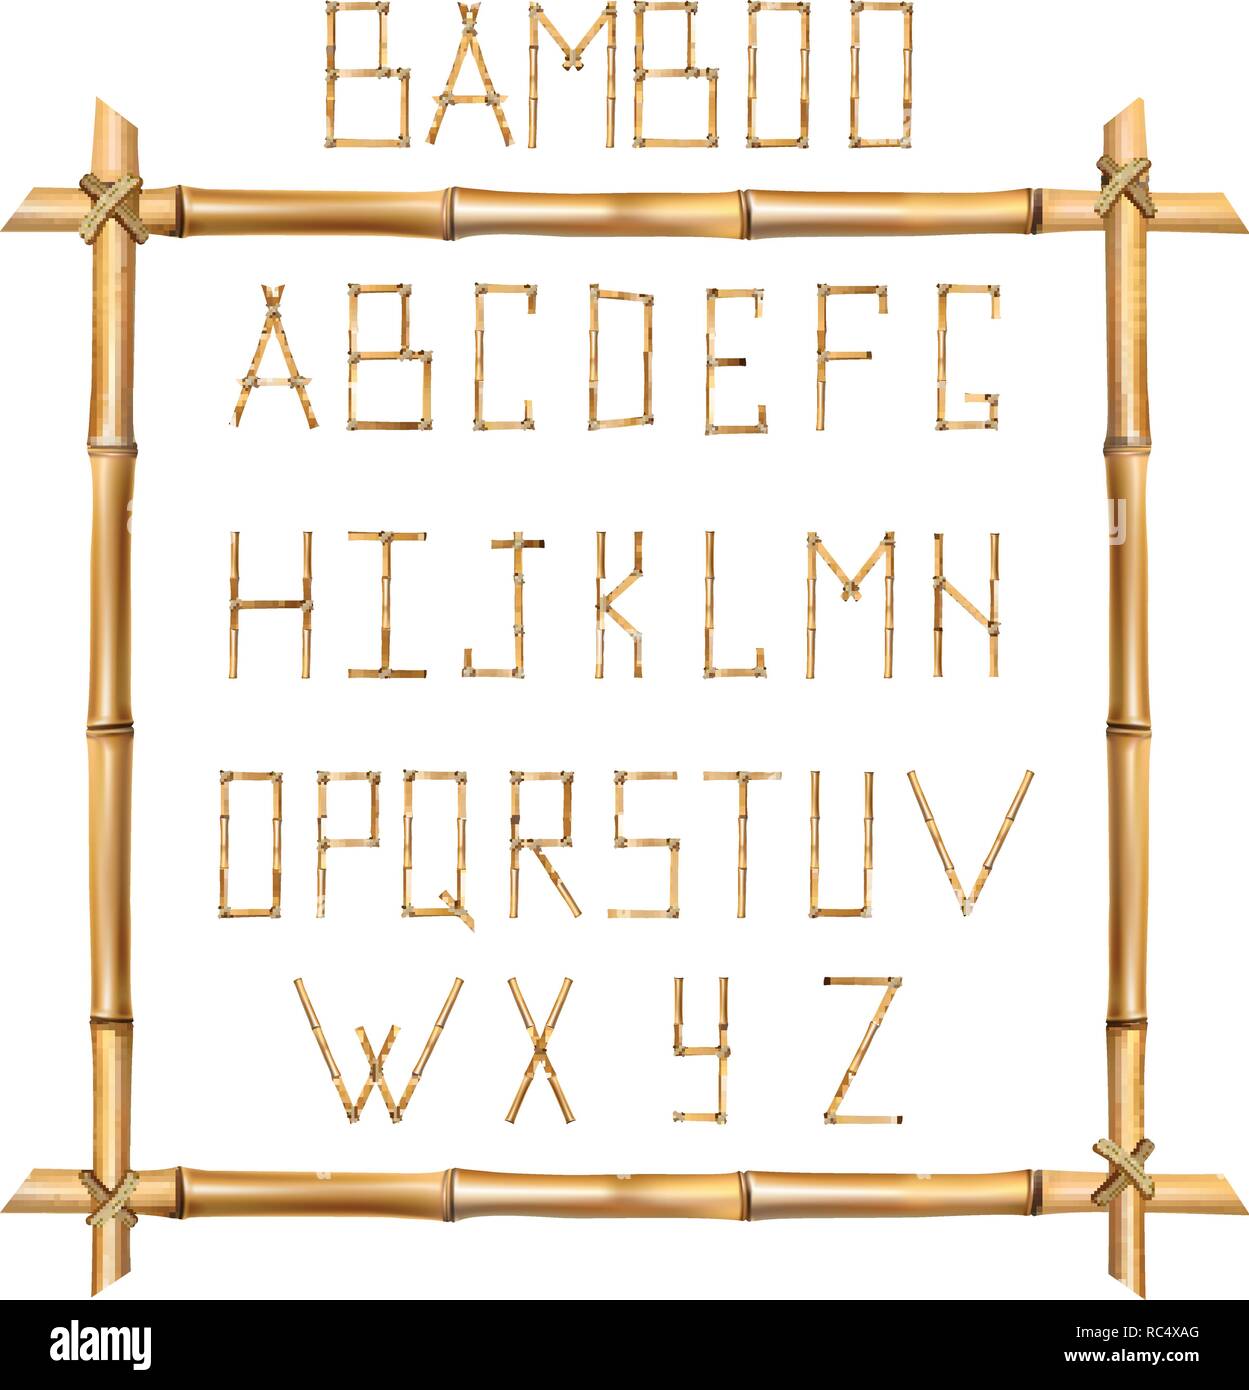 Vektor Bambus Alphabet. Großbuchstaben aus realistischen Braune trockene Bambusstäbe innerhalb der Holzstab Rahmen auf weißem Hintergrund. Abc anhand von quantitativen Simulatio Stock Vektor